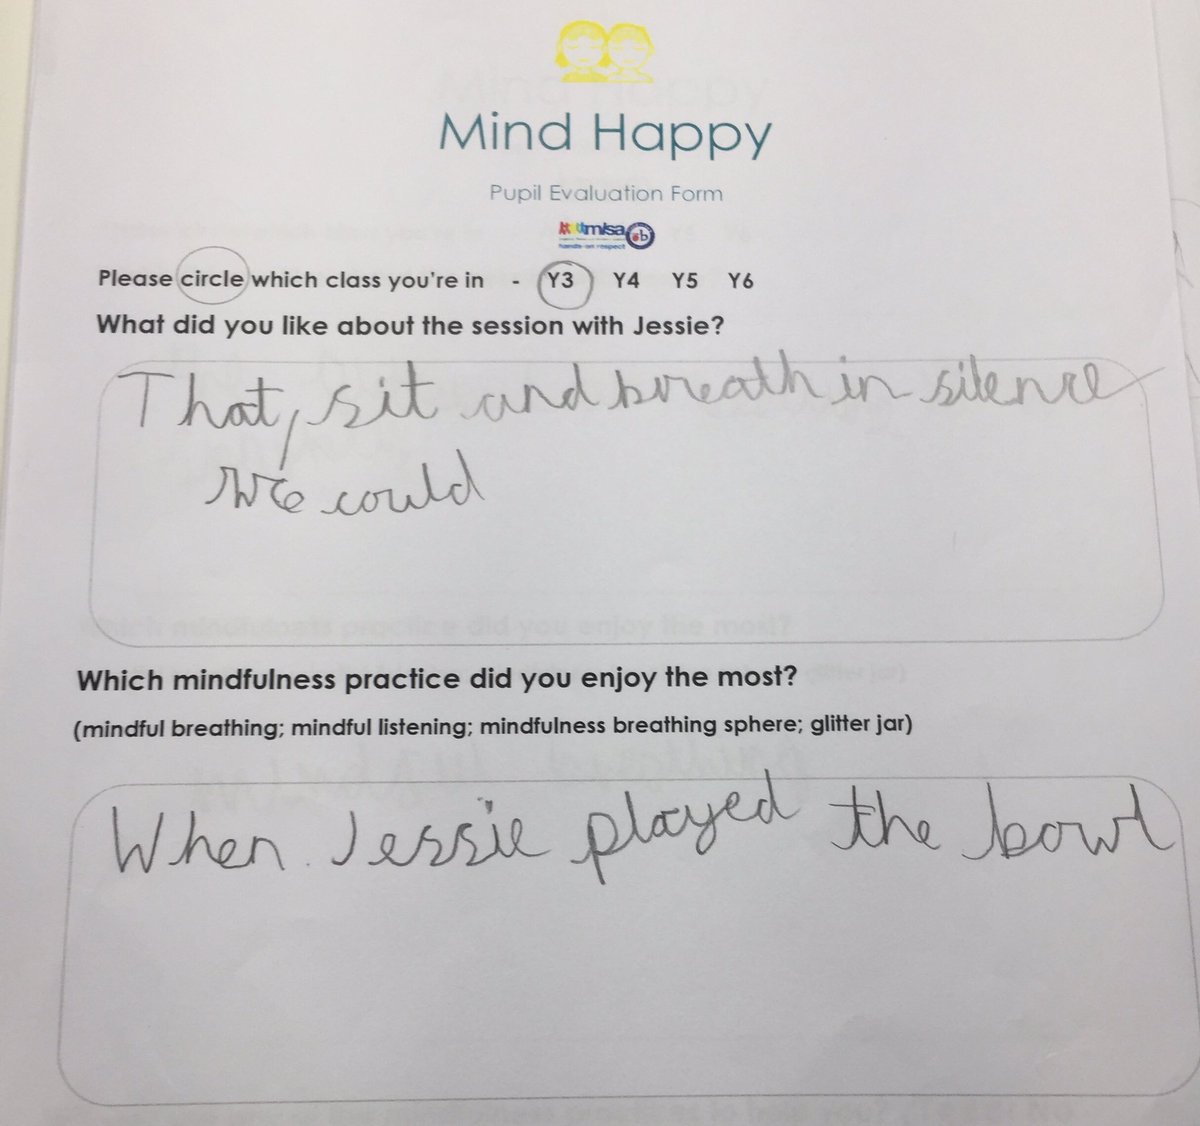 Fab feedback #mindfulness #mindfulnessinschools #wellbeingforchildren #mindhappy